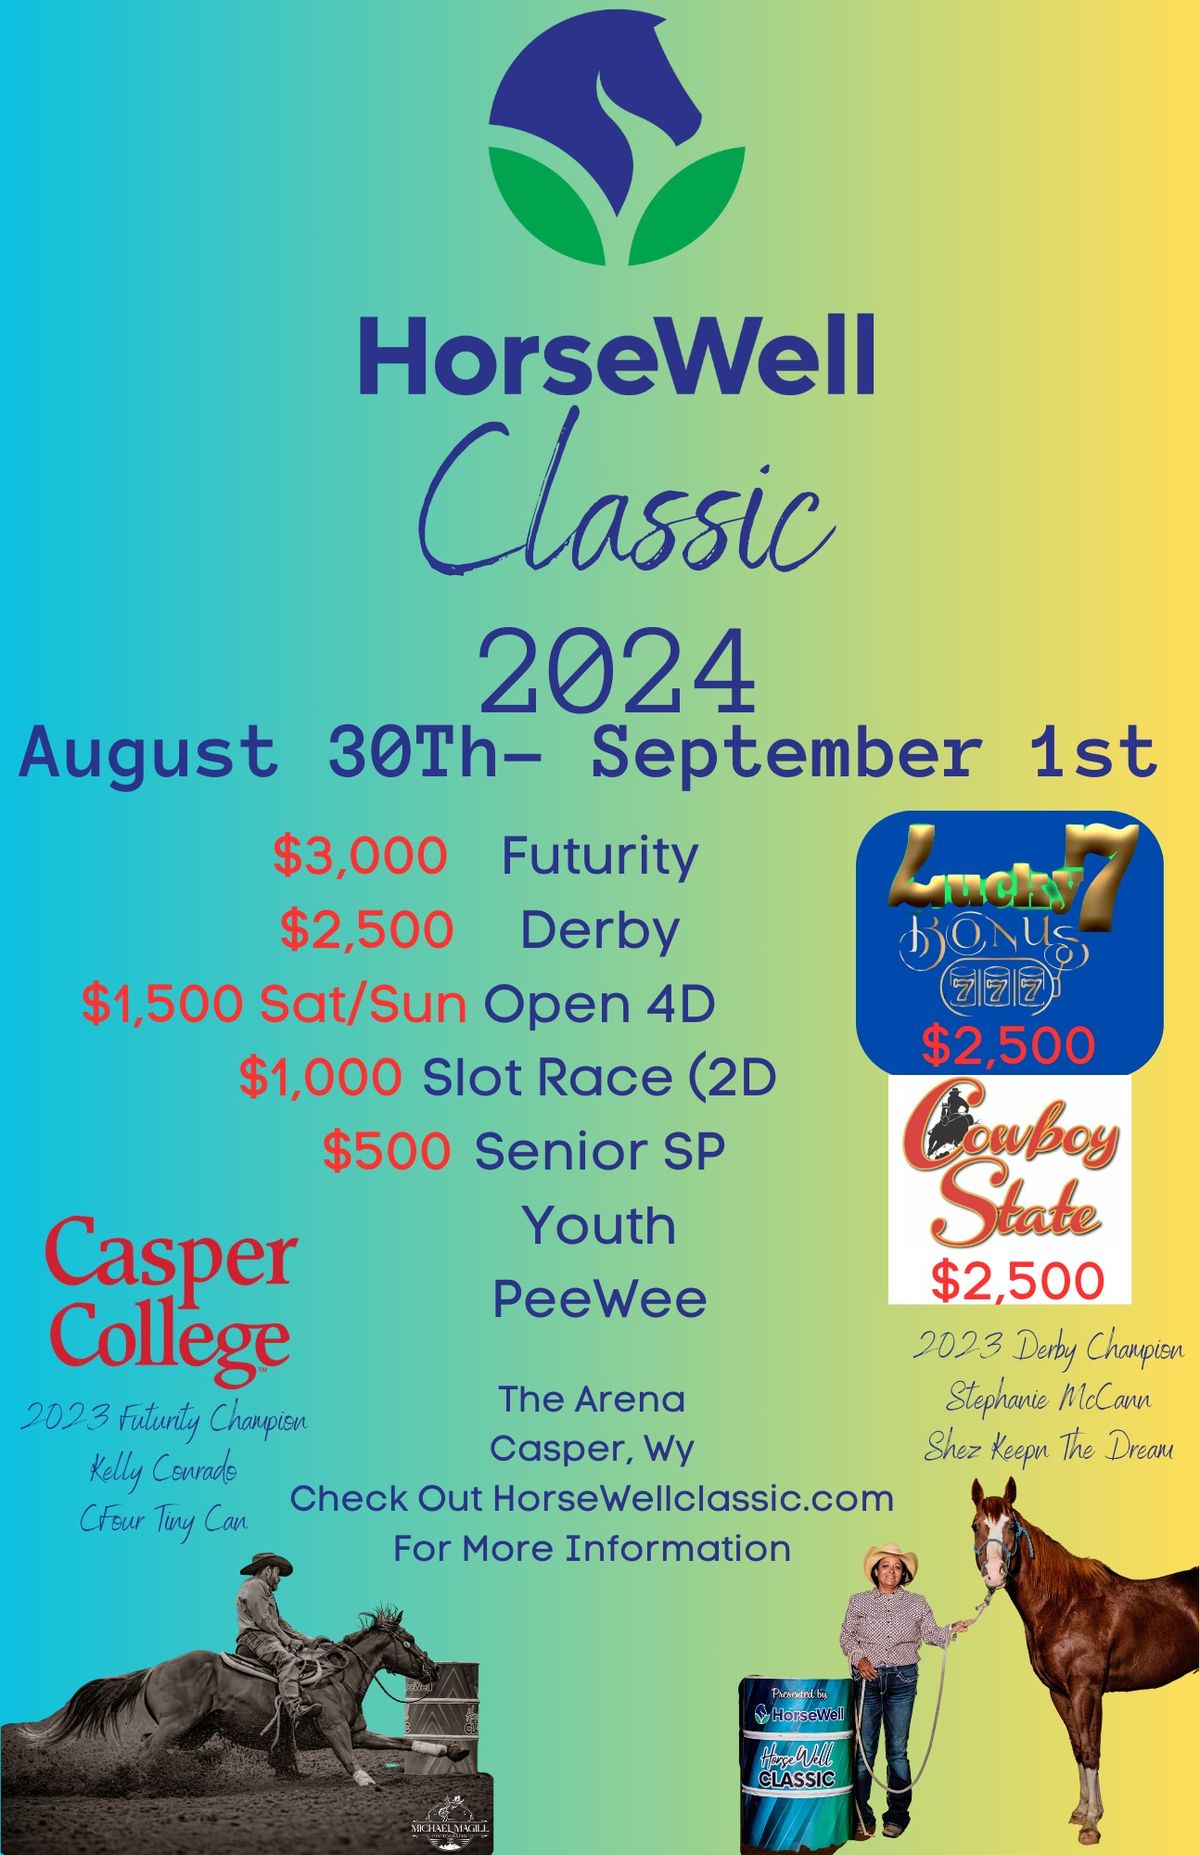 HorseWell Classic 2024